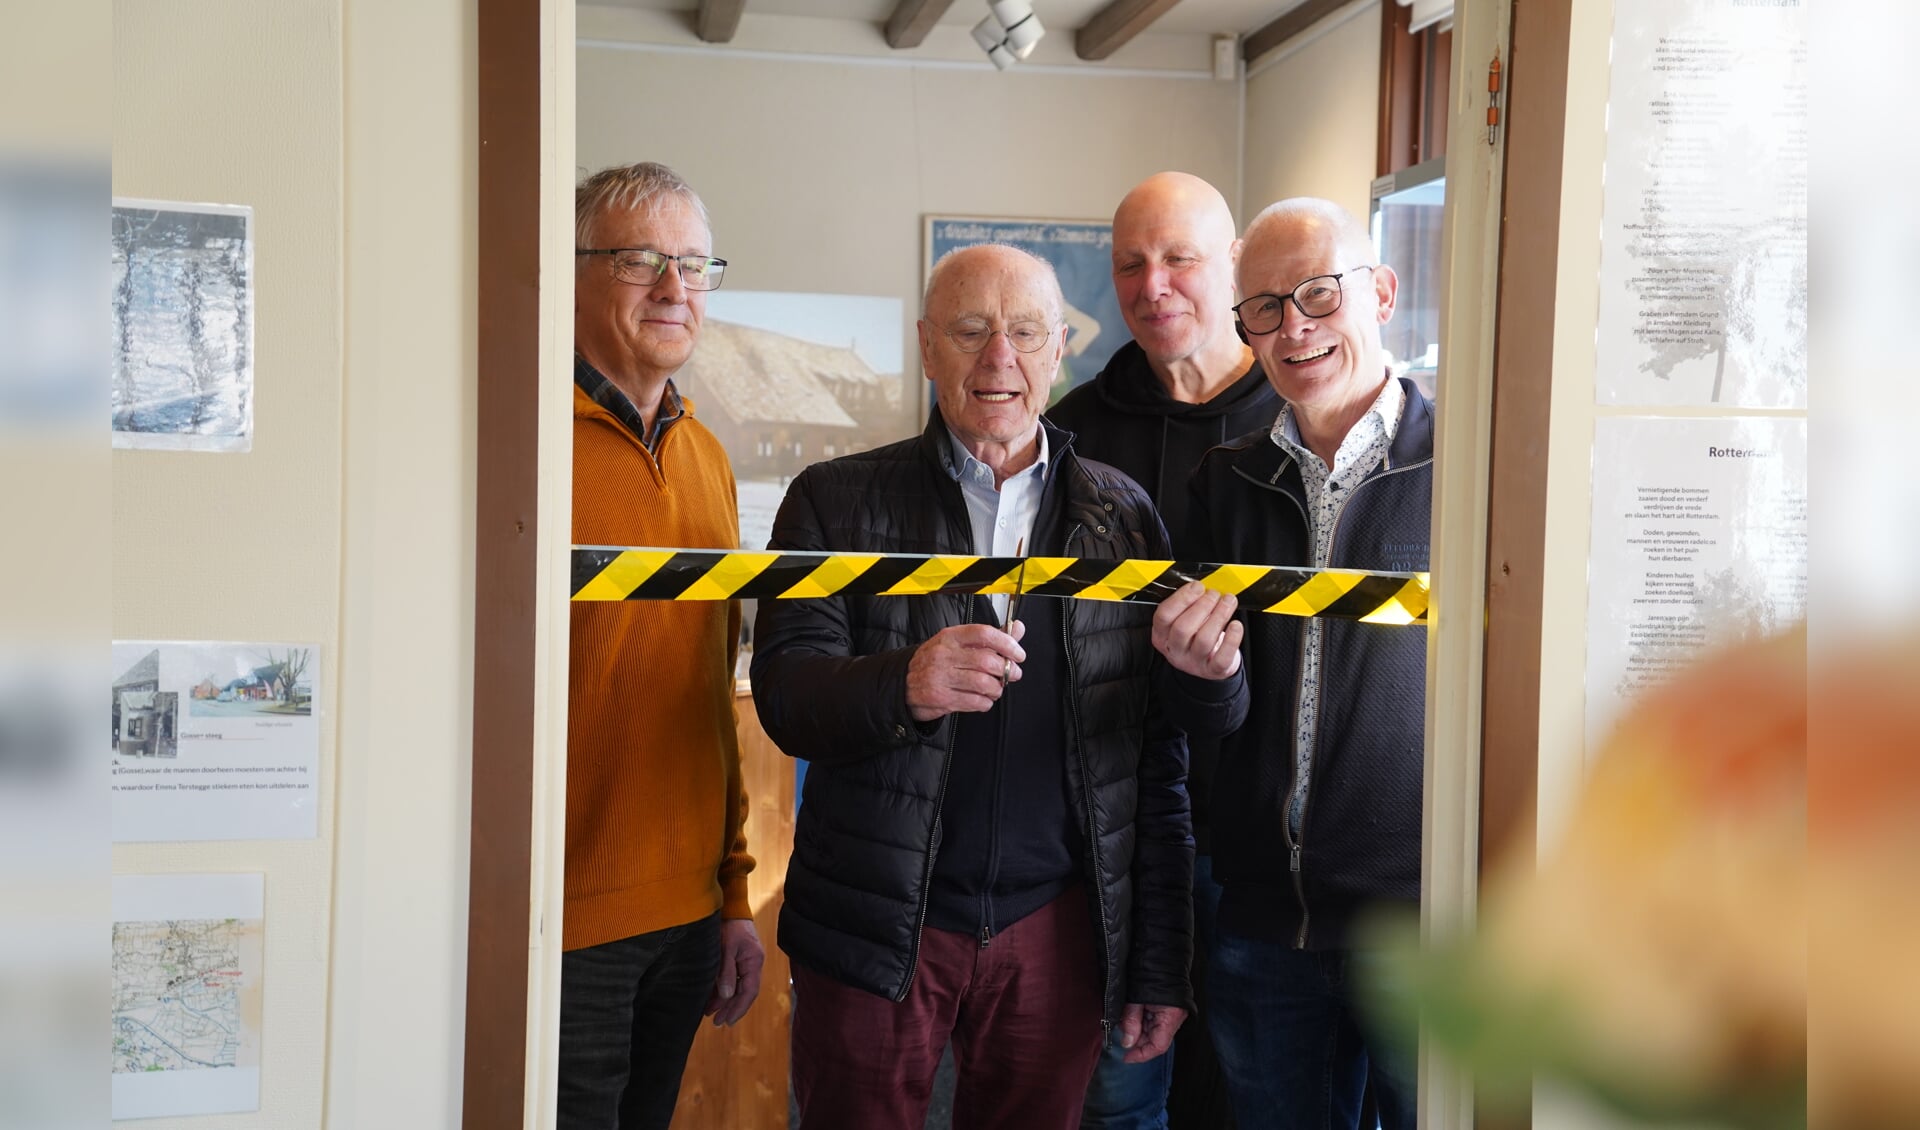 Vlnr: Willem Geven, Rudi Ostermann, René Westendorp en Aloys Geven. Foto: Frank Vinkenvleugel